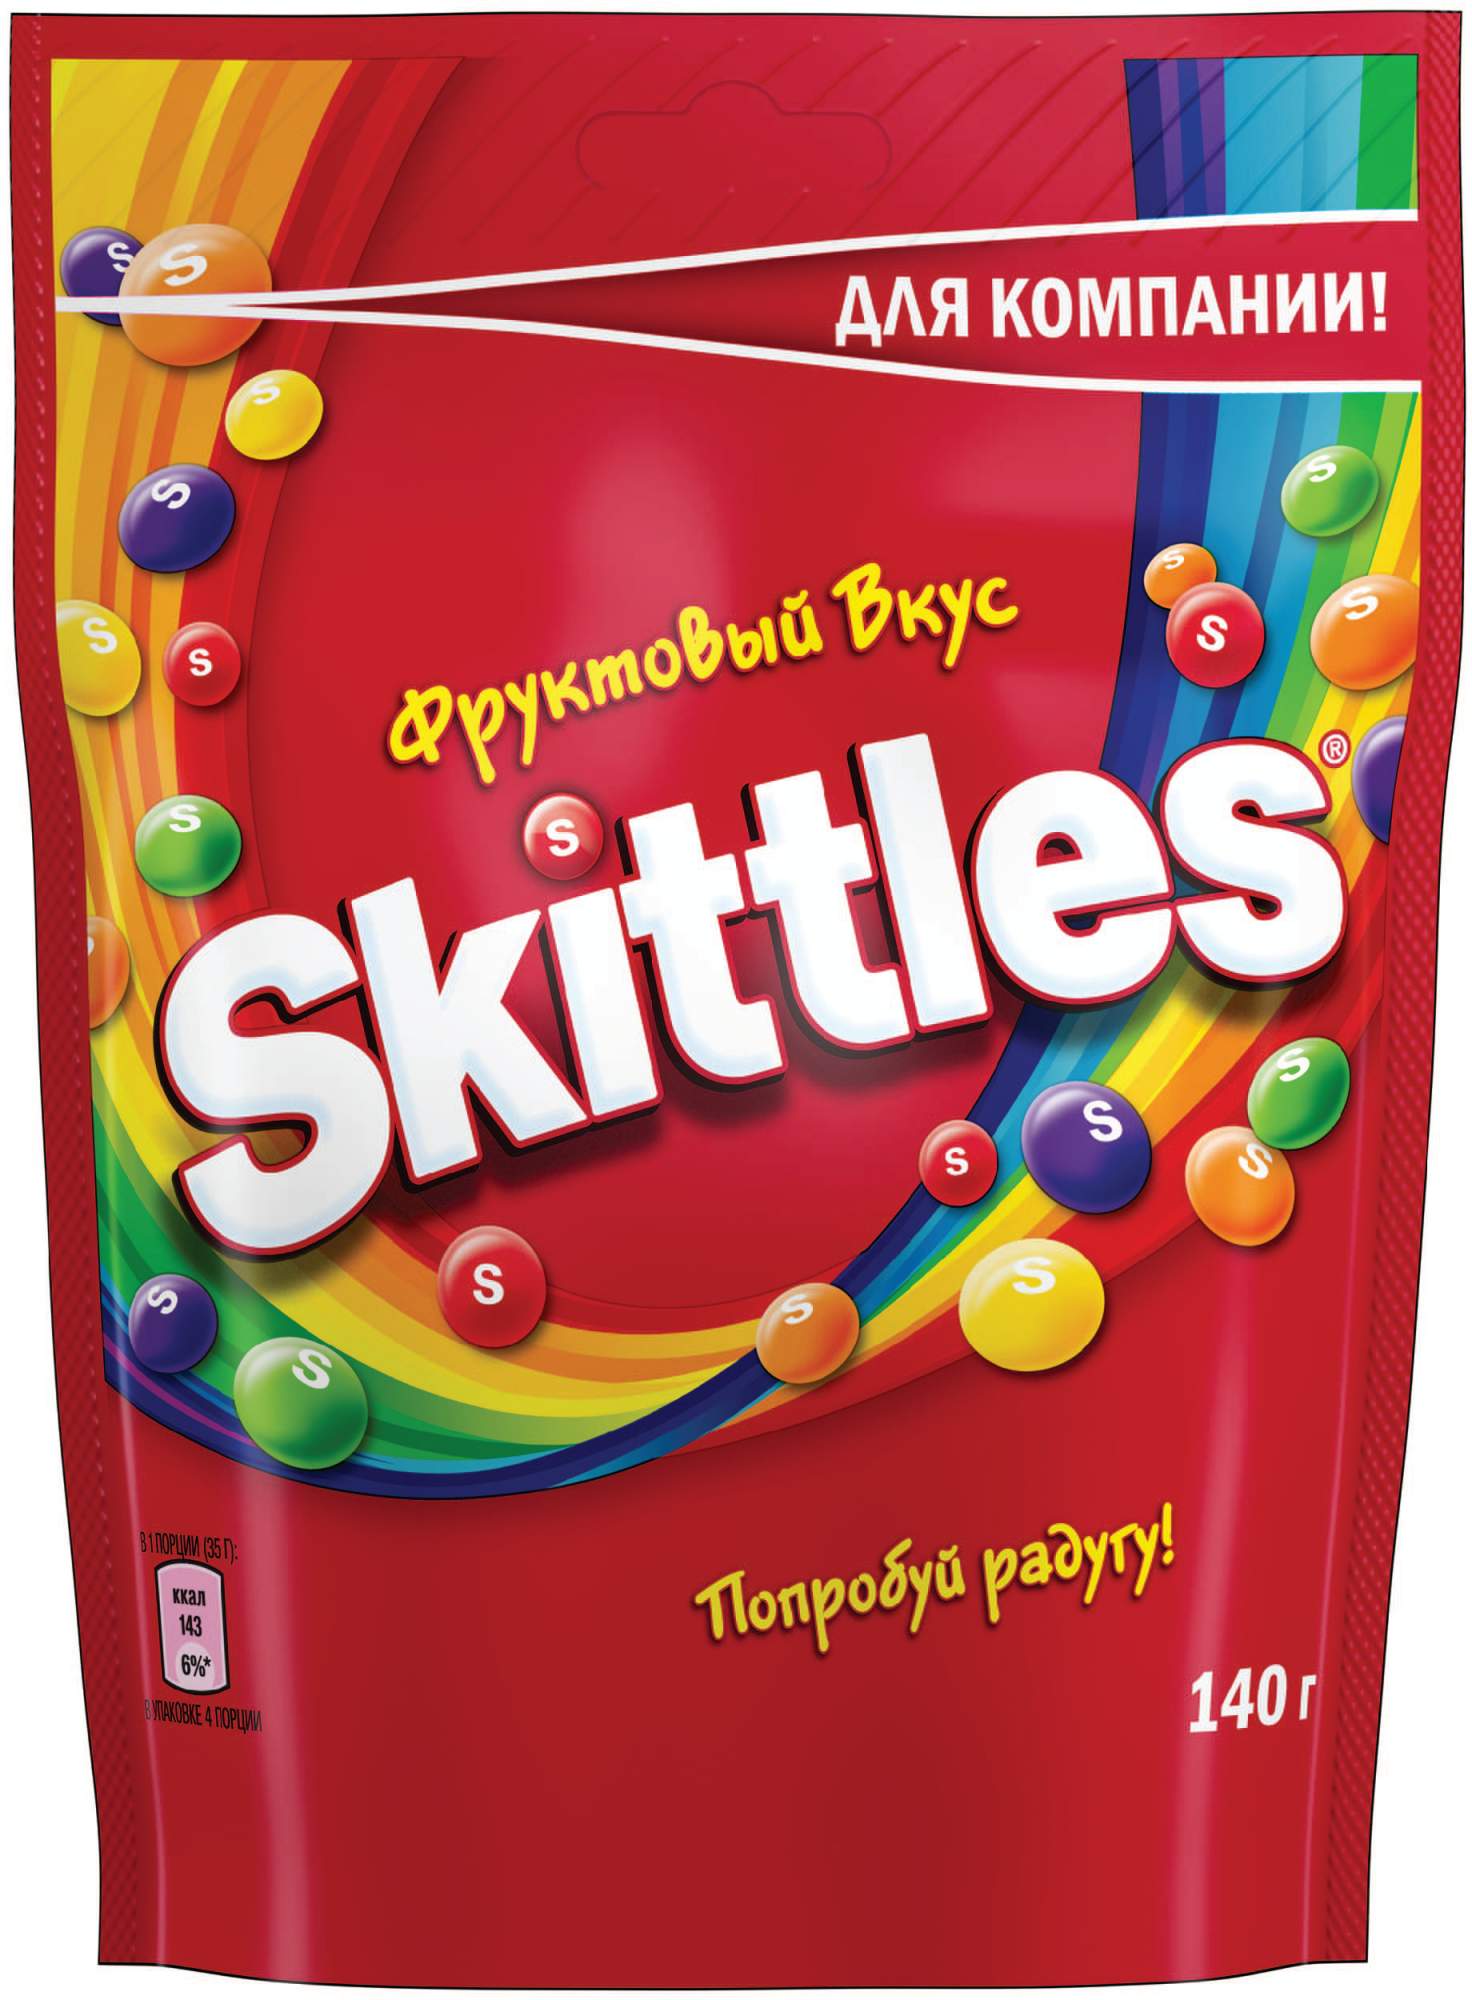 Драже Skittles Фрукты в сахарной глазури 140 г - купить в Мегамаркет Москва, цена на Мегамаркет